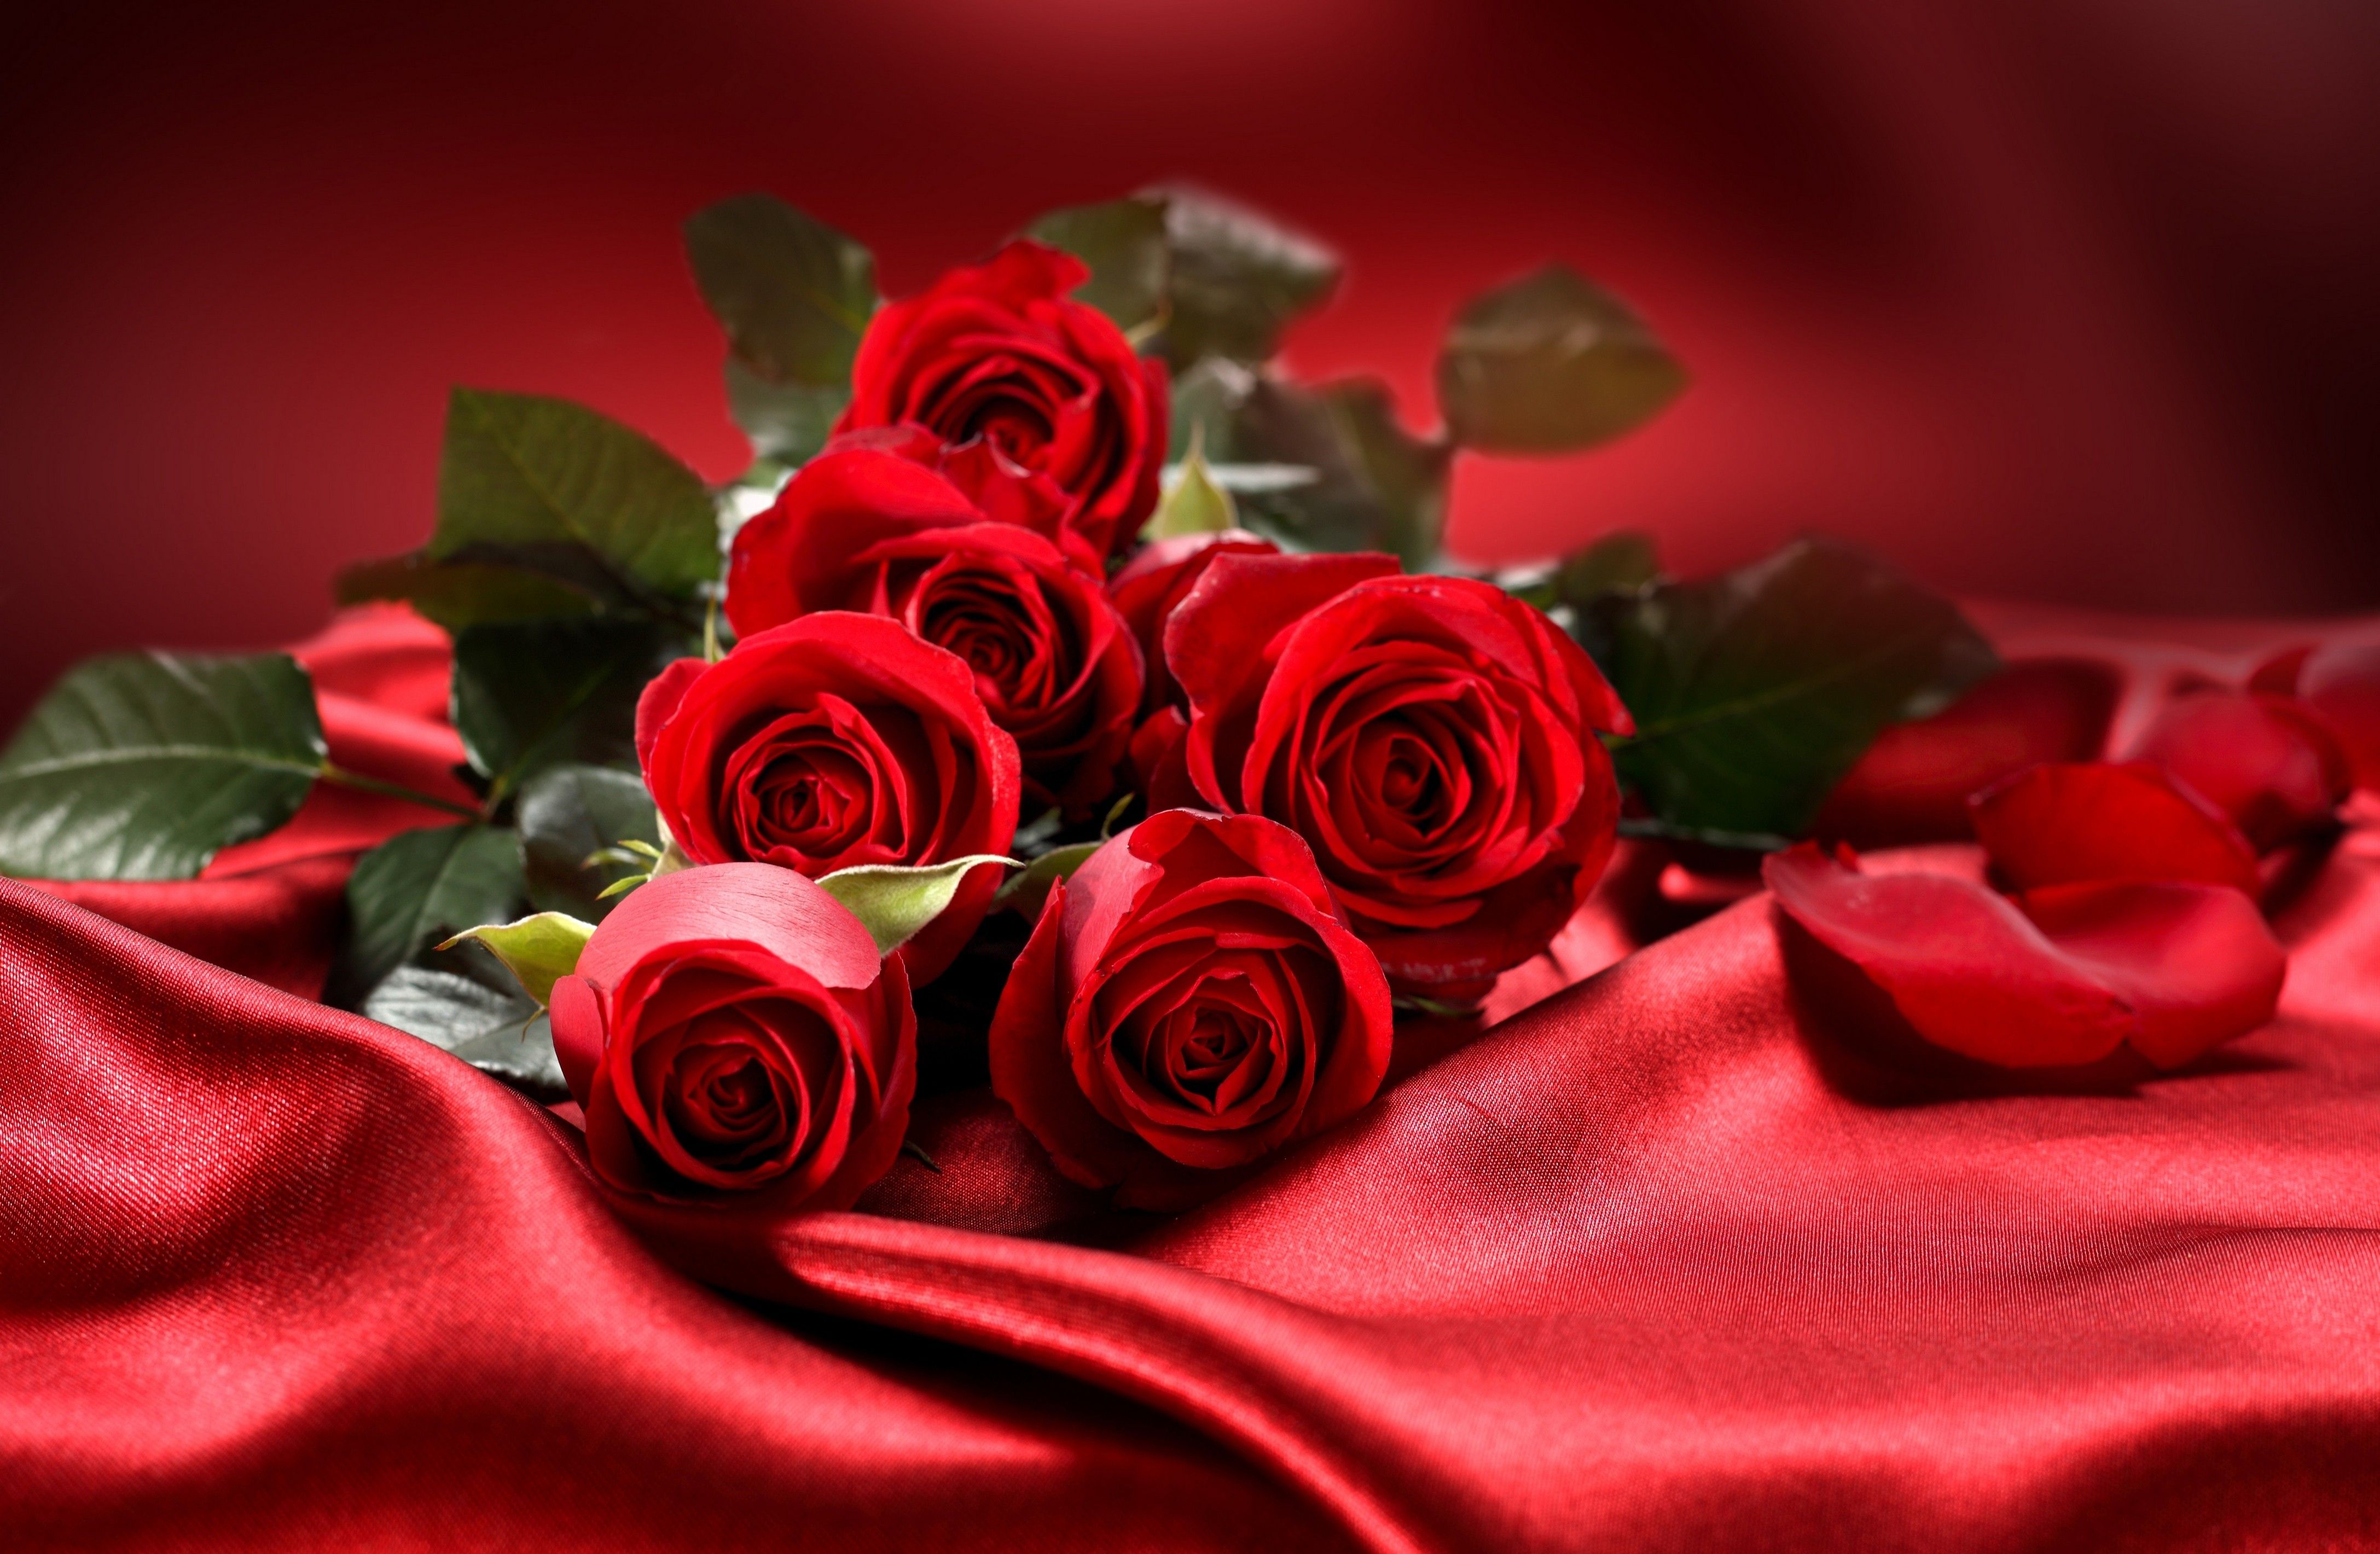 rose flower wallpaper download,red,garden roses,rose,flower,rose family